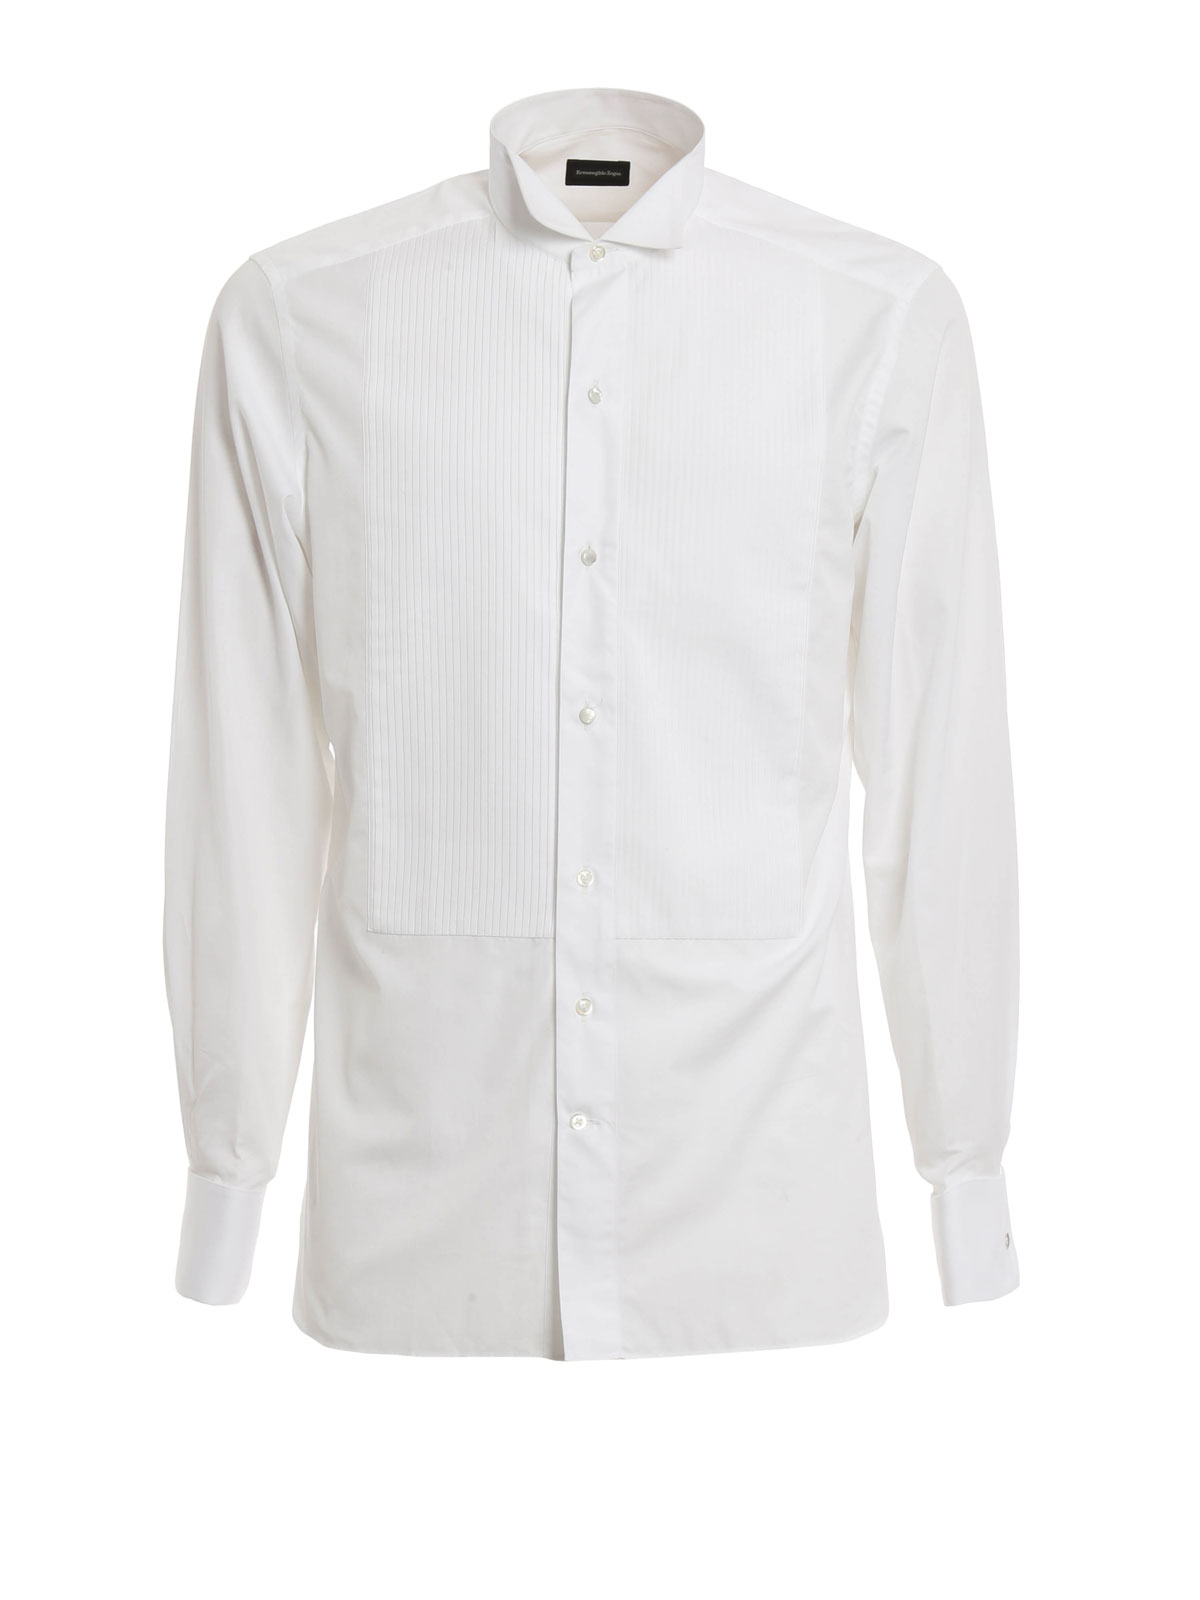 Shirts Ermenegildo Zegna - Cotton tuxedo shirt - 8019669MENSM | iKRIX.com